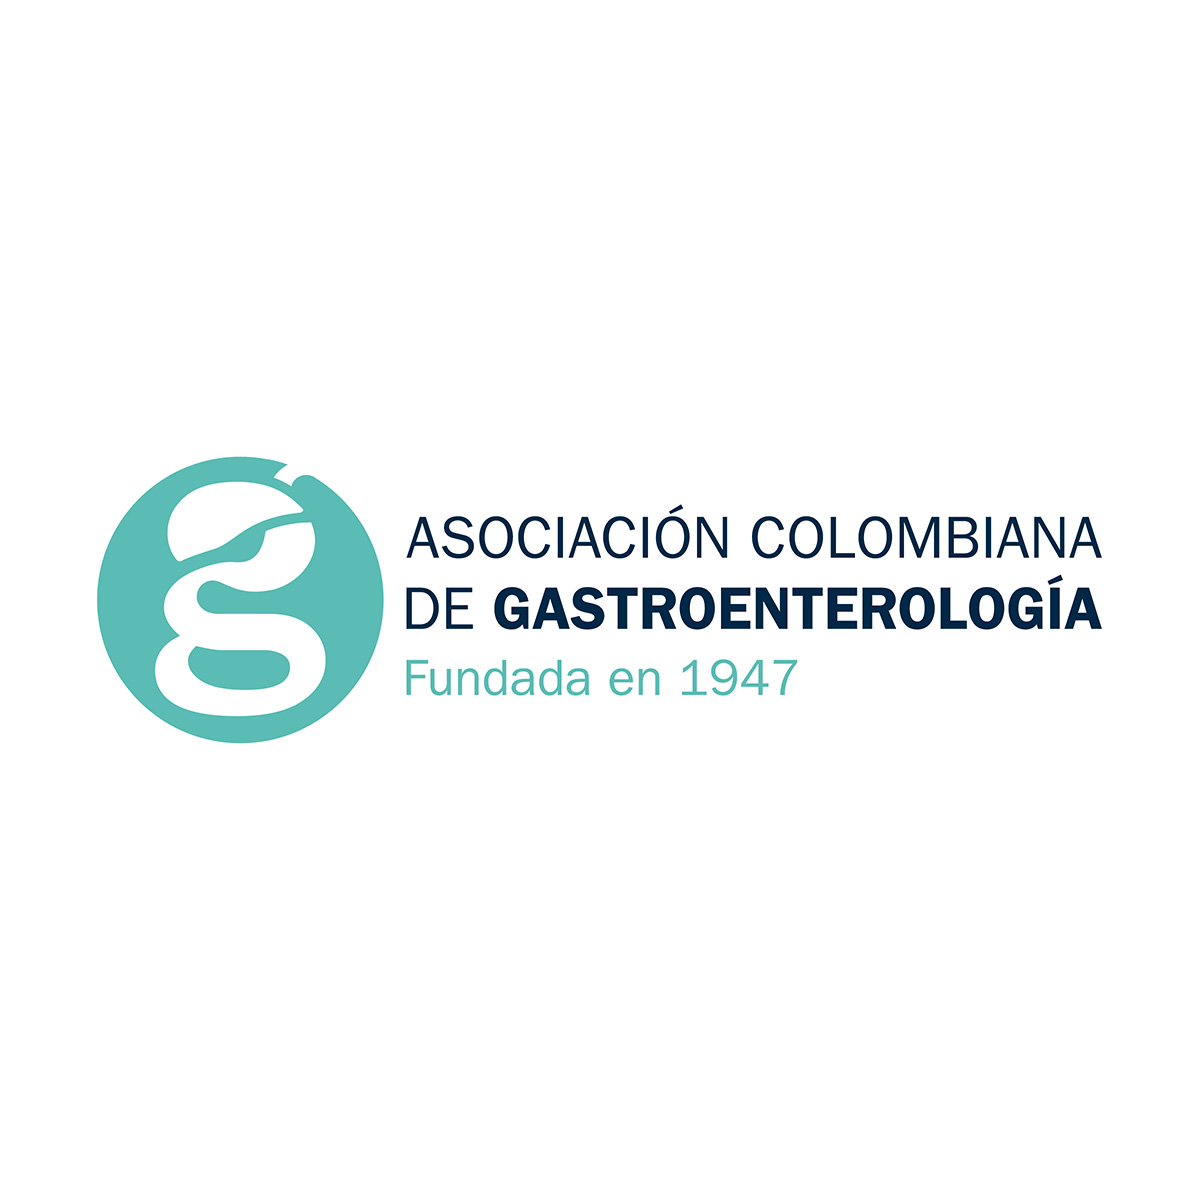 Asociación Colombiana de Gastroenterología